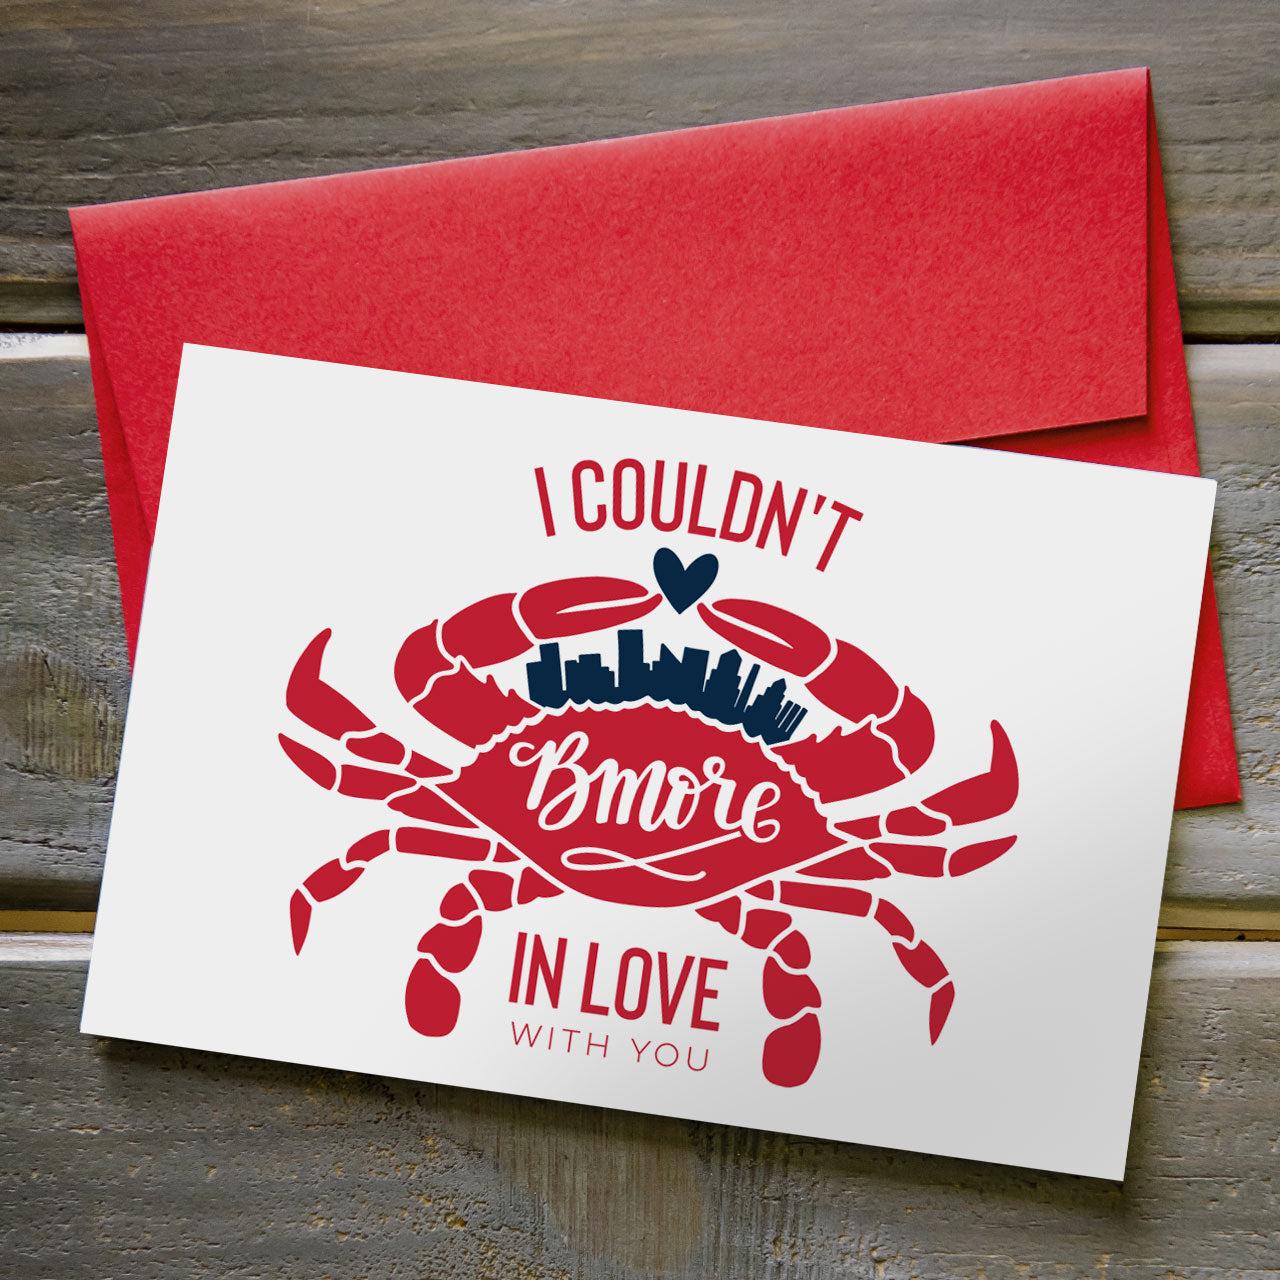 Bmore in Love - Greeting Card